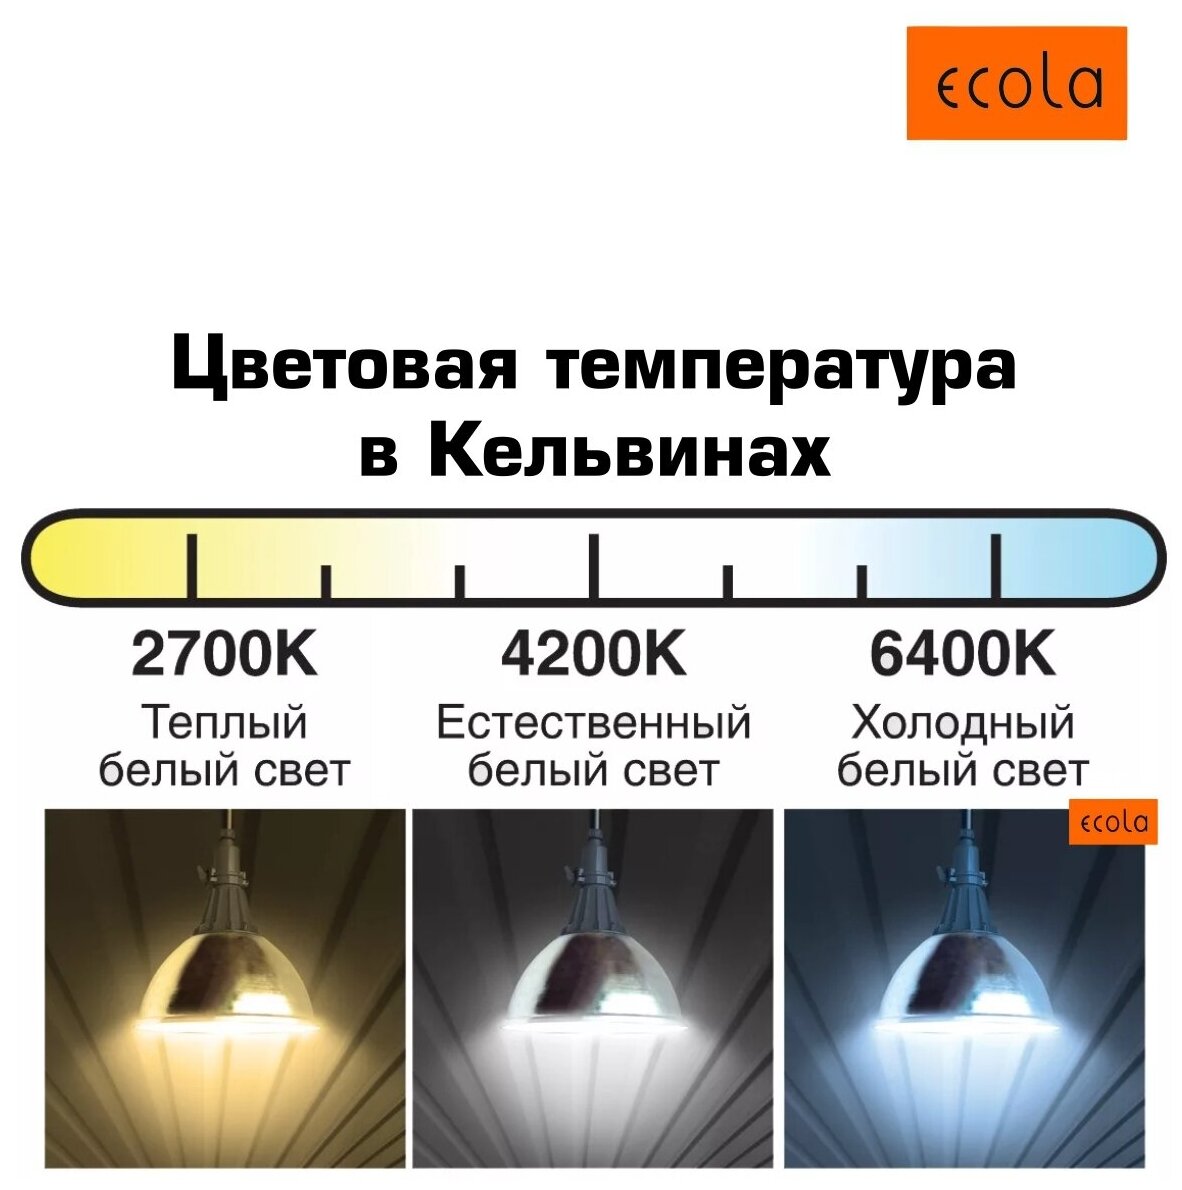 Лампа потолочная, светодиодная (4штуки) Ecola GX53, таблетка, 10W 4200K естественный белый свет